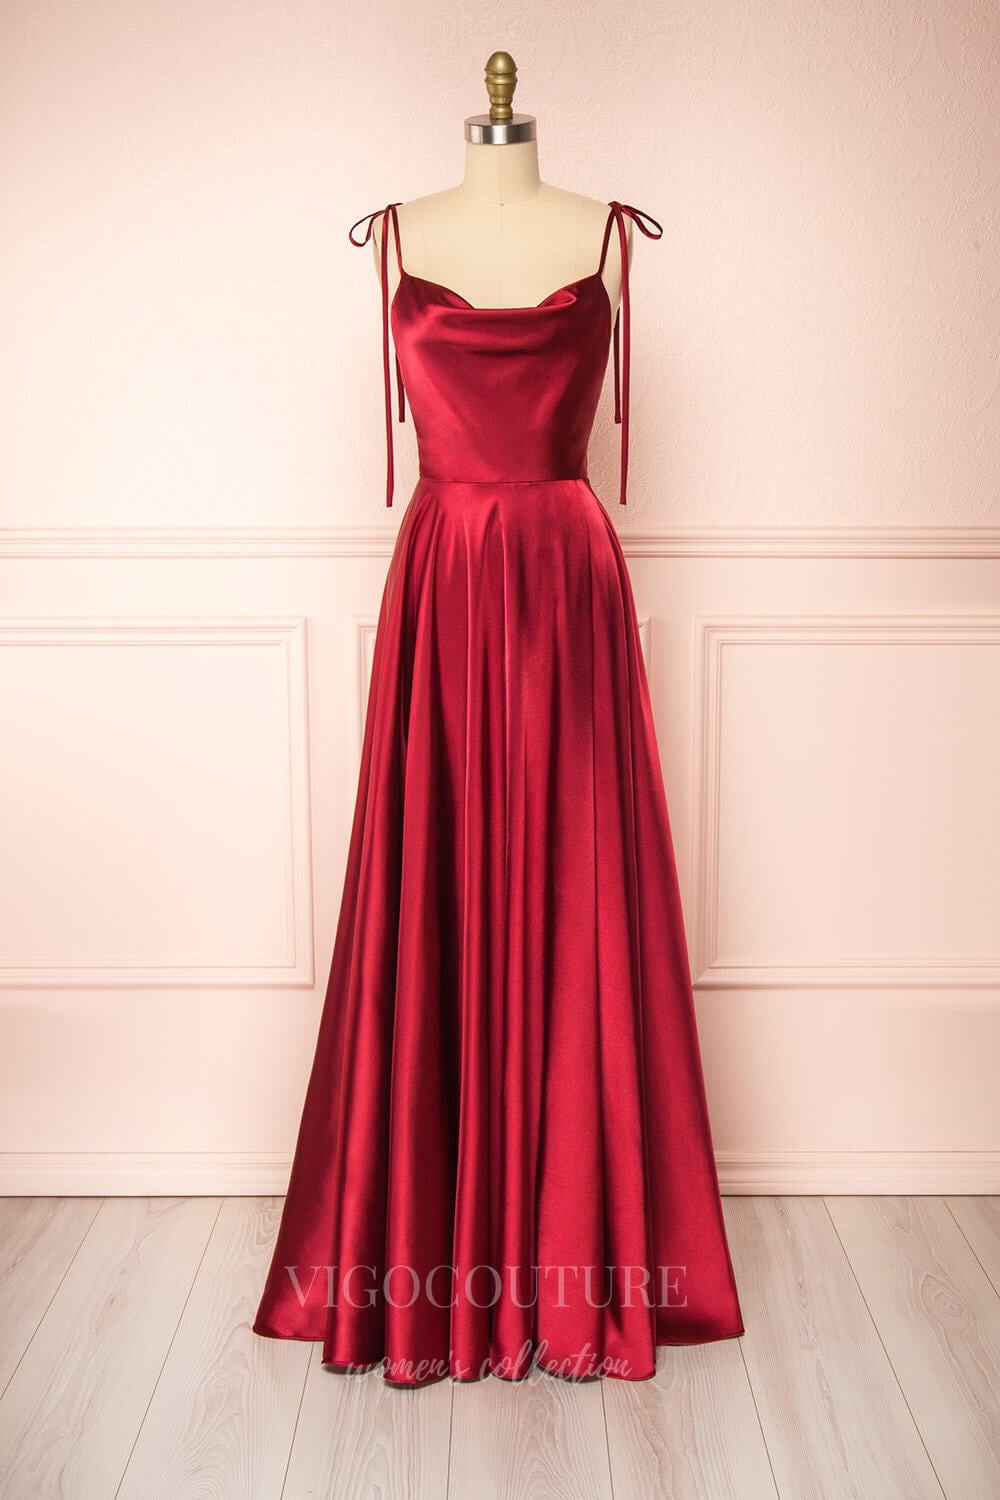 vigocouture-Silver Spaghetti Strap Prom Dress 20574-Prom Dresses-vigocouture-Burgundy-US2-